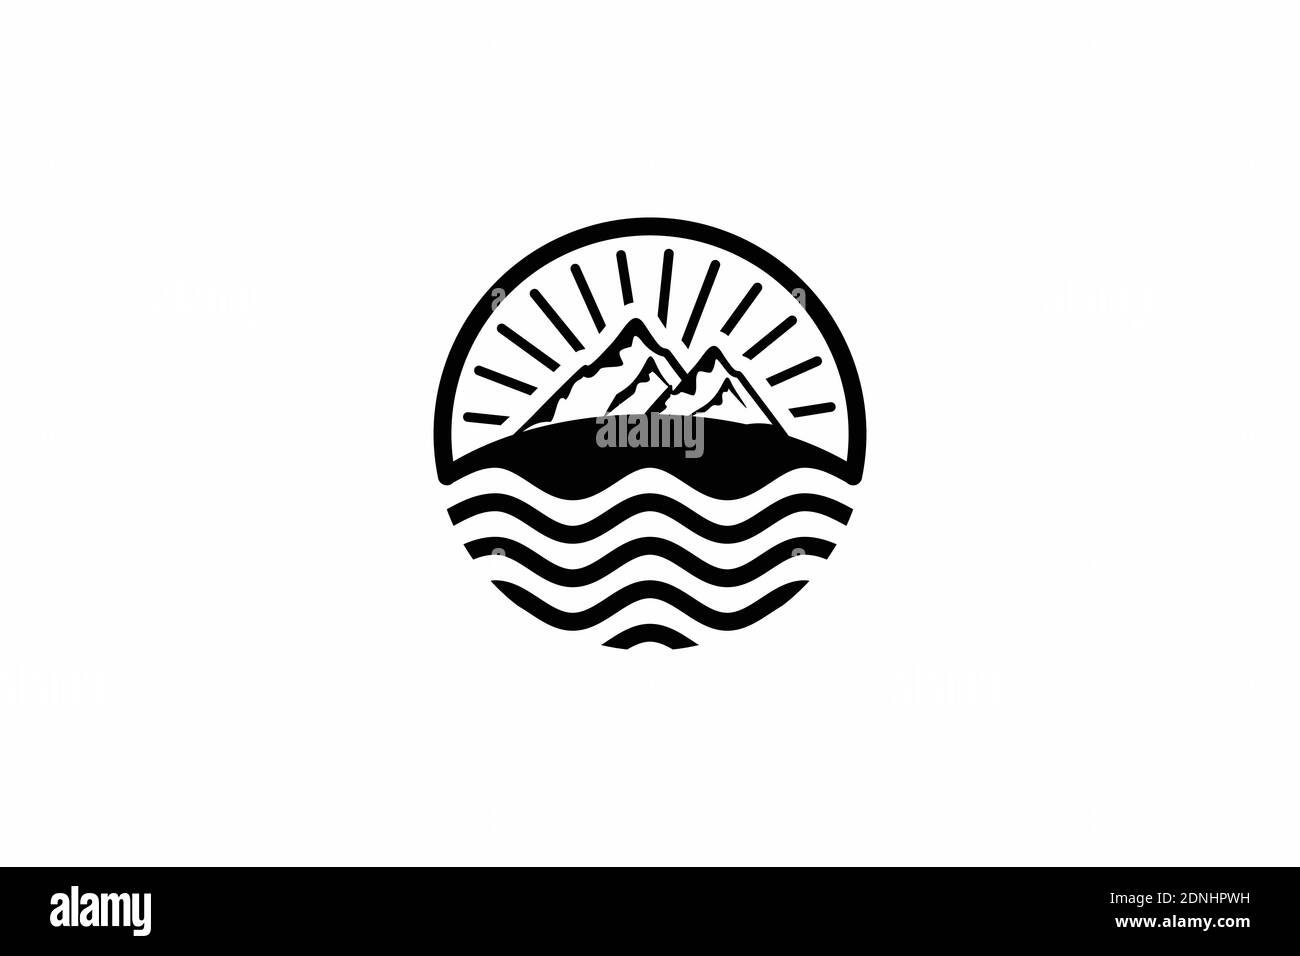 Berg, Meer und Sonne für Hipster Adventure Travelling Logo Designinspiration Stock Vektor